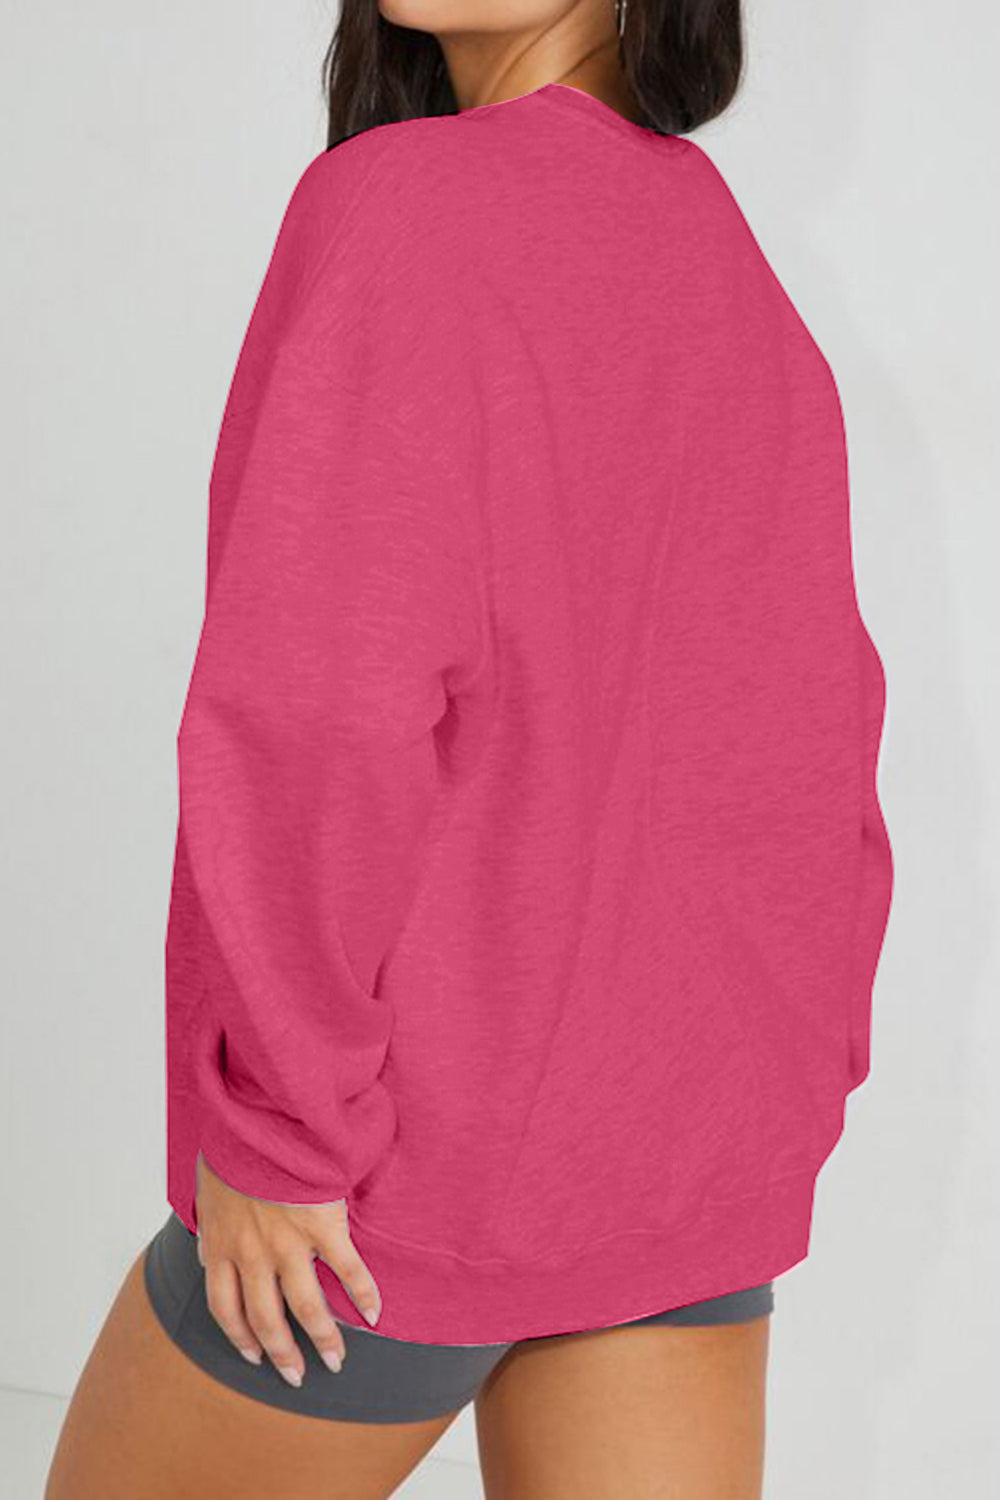 Simply Love Full Size YOSEMITE Graphic Sweatshirt